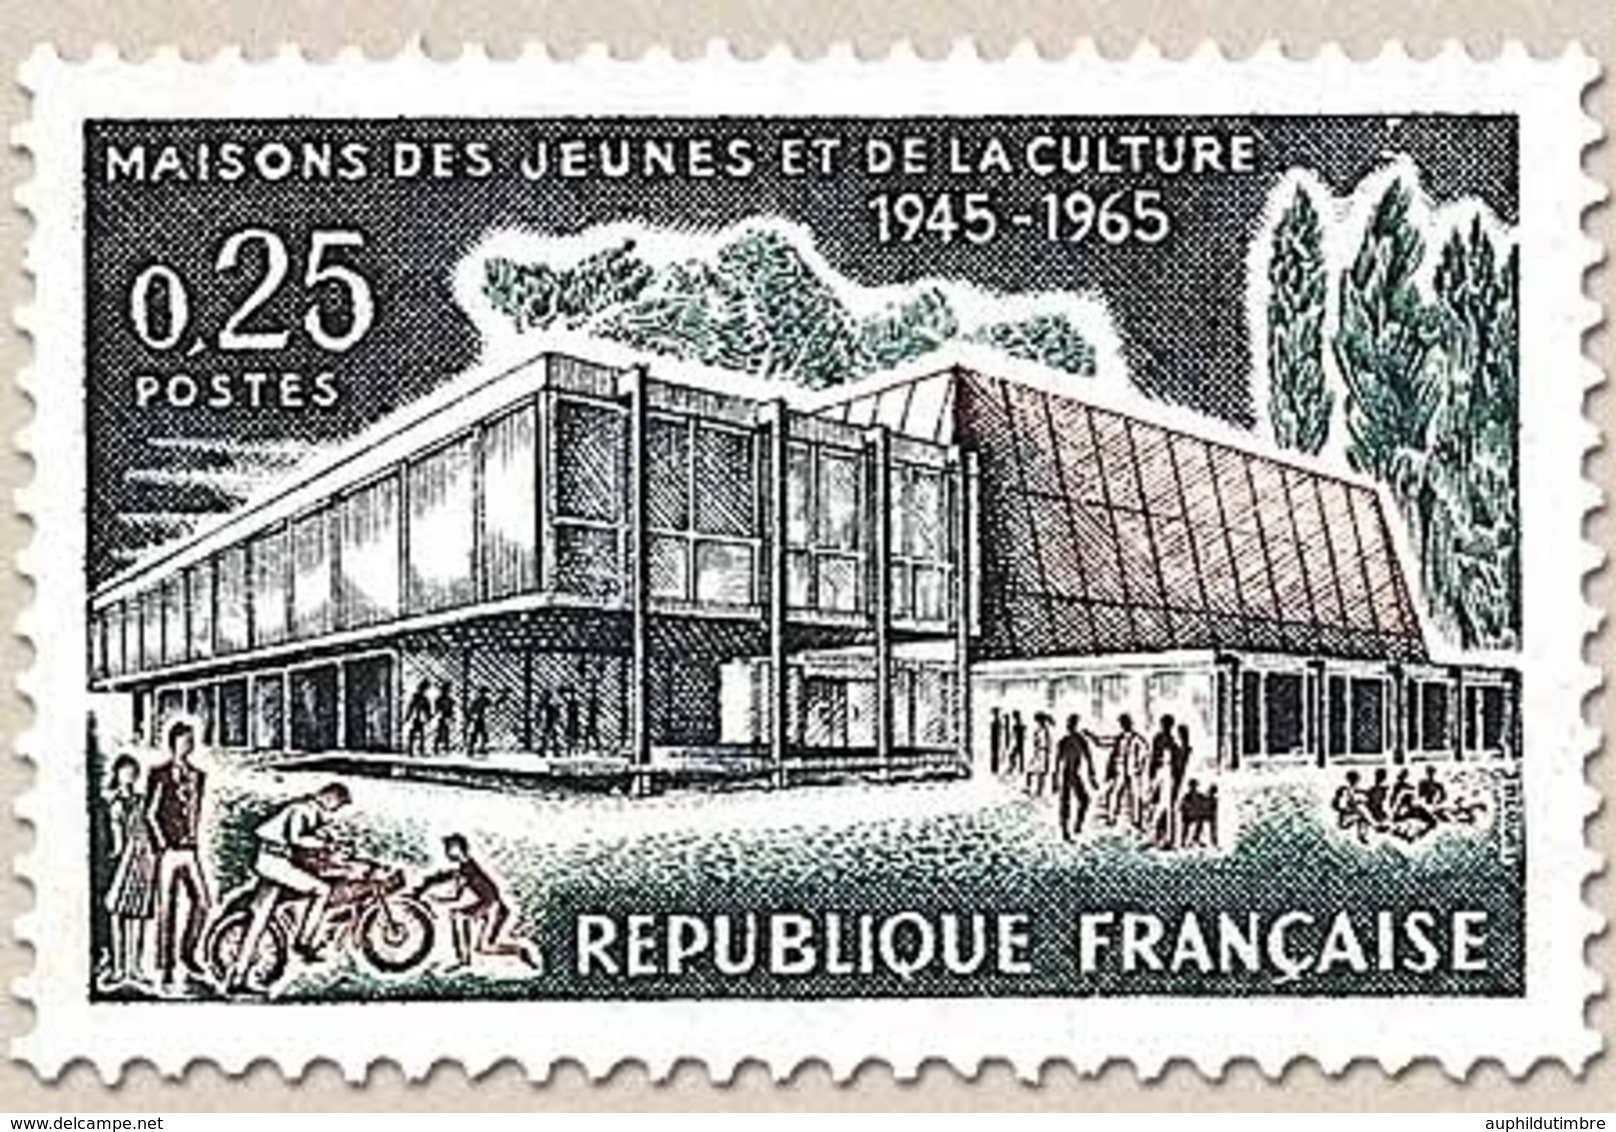 Maisons Des Jeunes Et De La Culture. Troyes : Maison Des Jaunes Et De La Culture. 25c. Y1448 - Nuevos